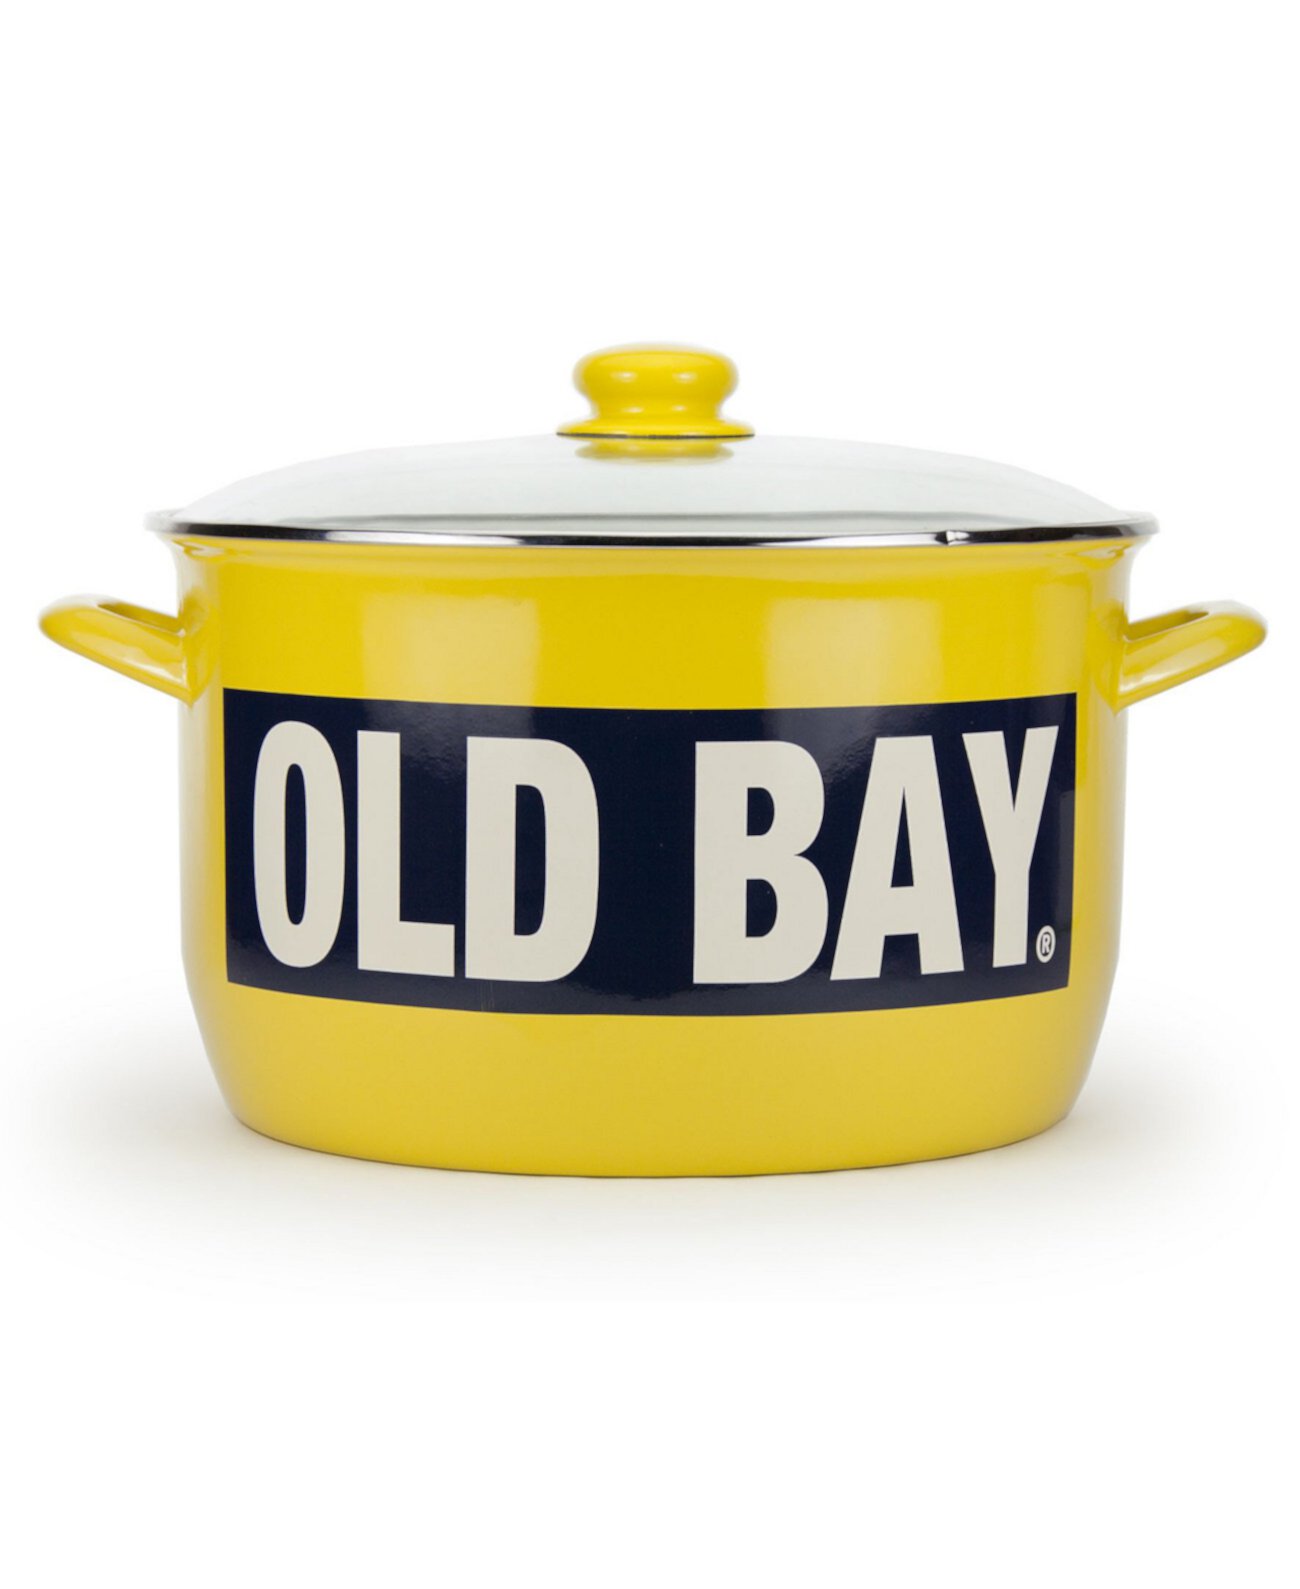 Коллекция эмалированной посуды Old Bay, 18 литров, сток Golden Rabbit